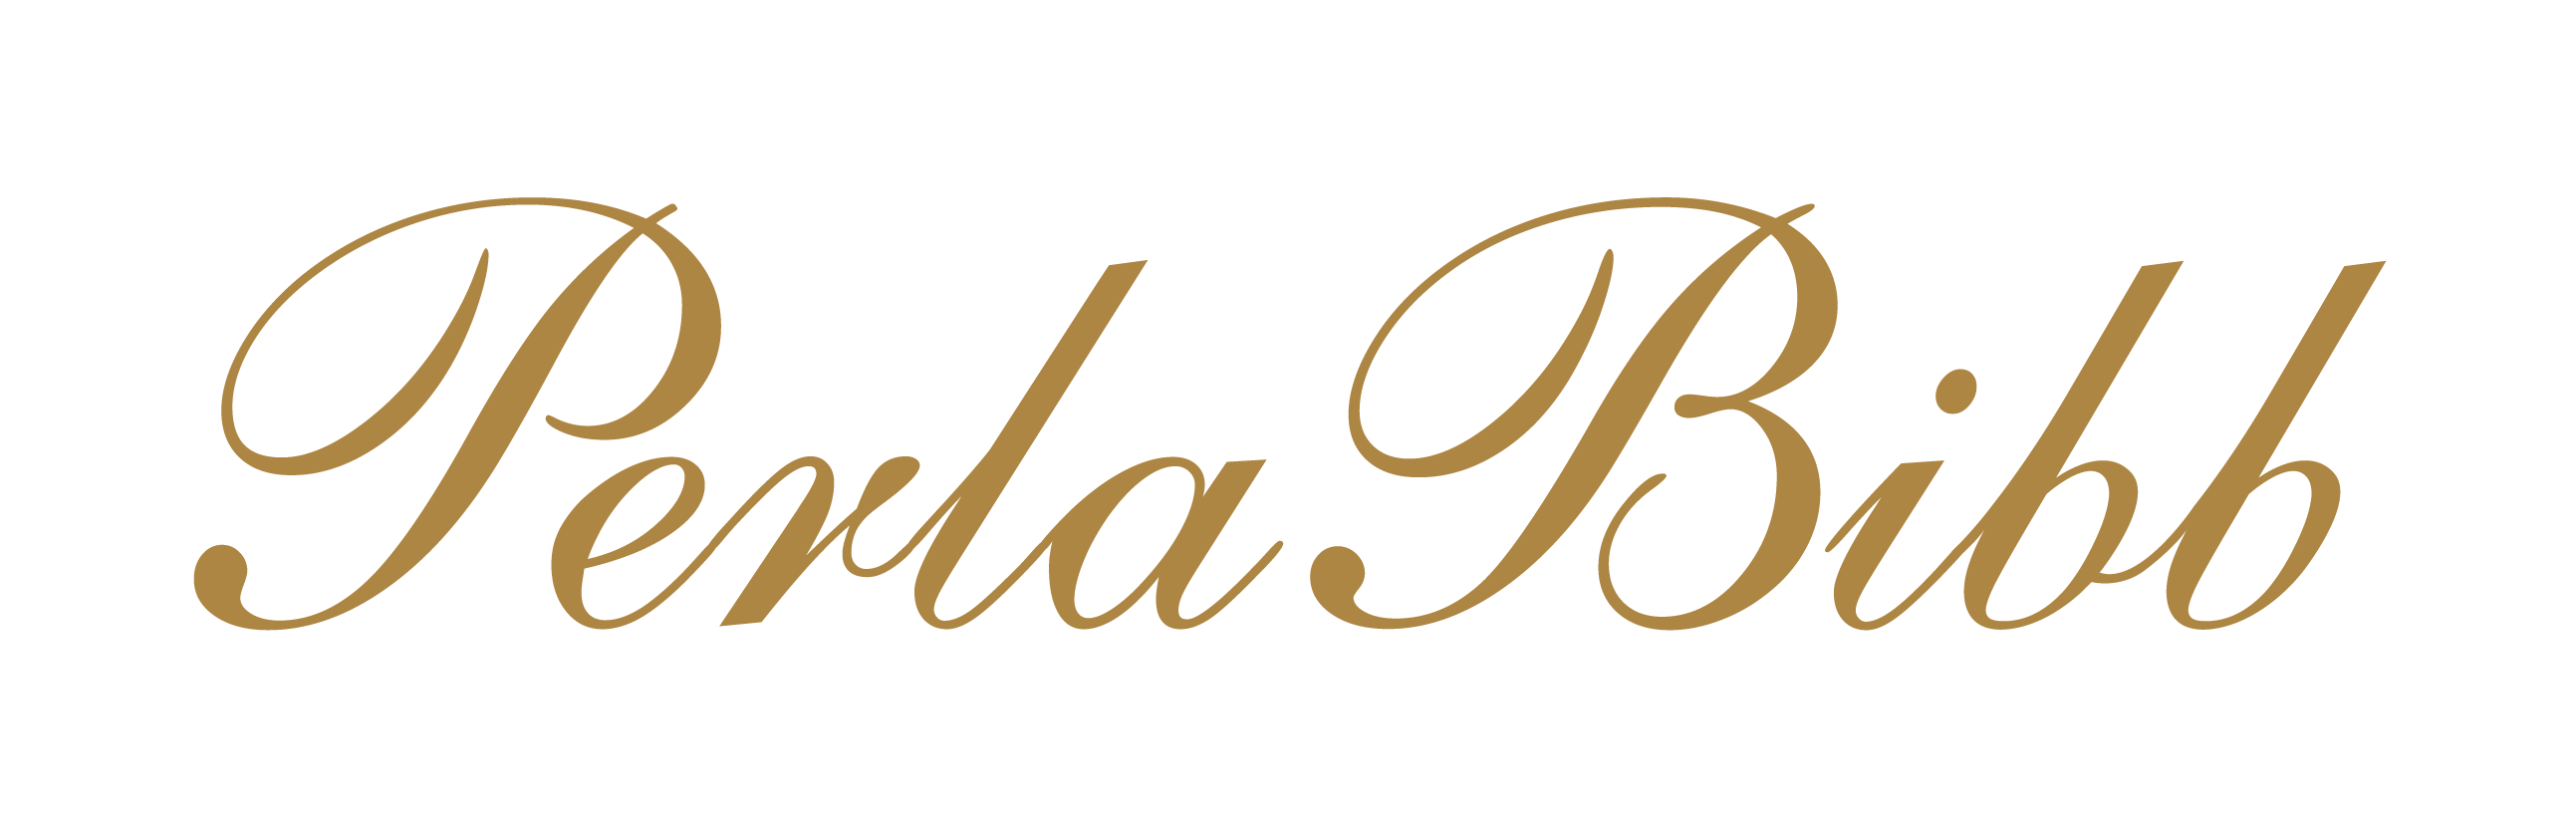 Perla Bibb logo